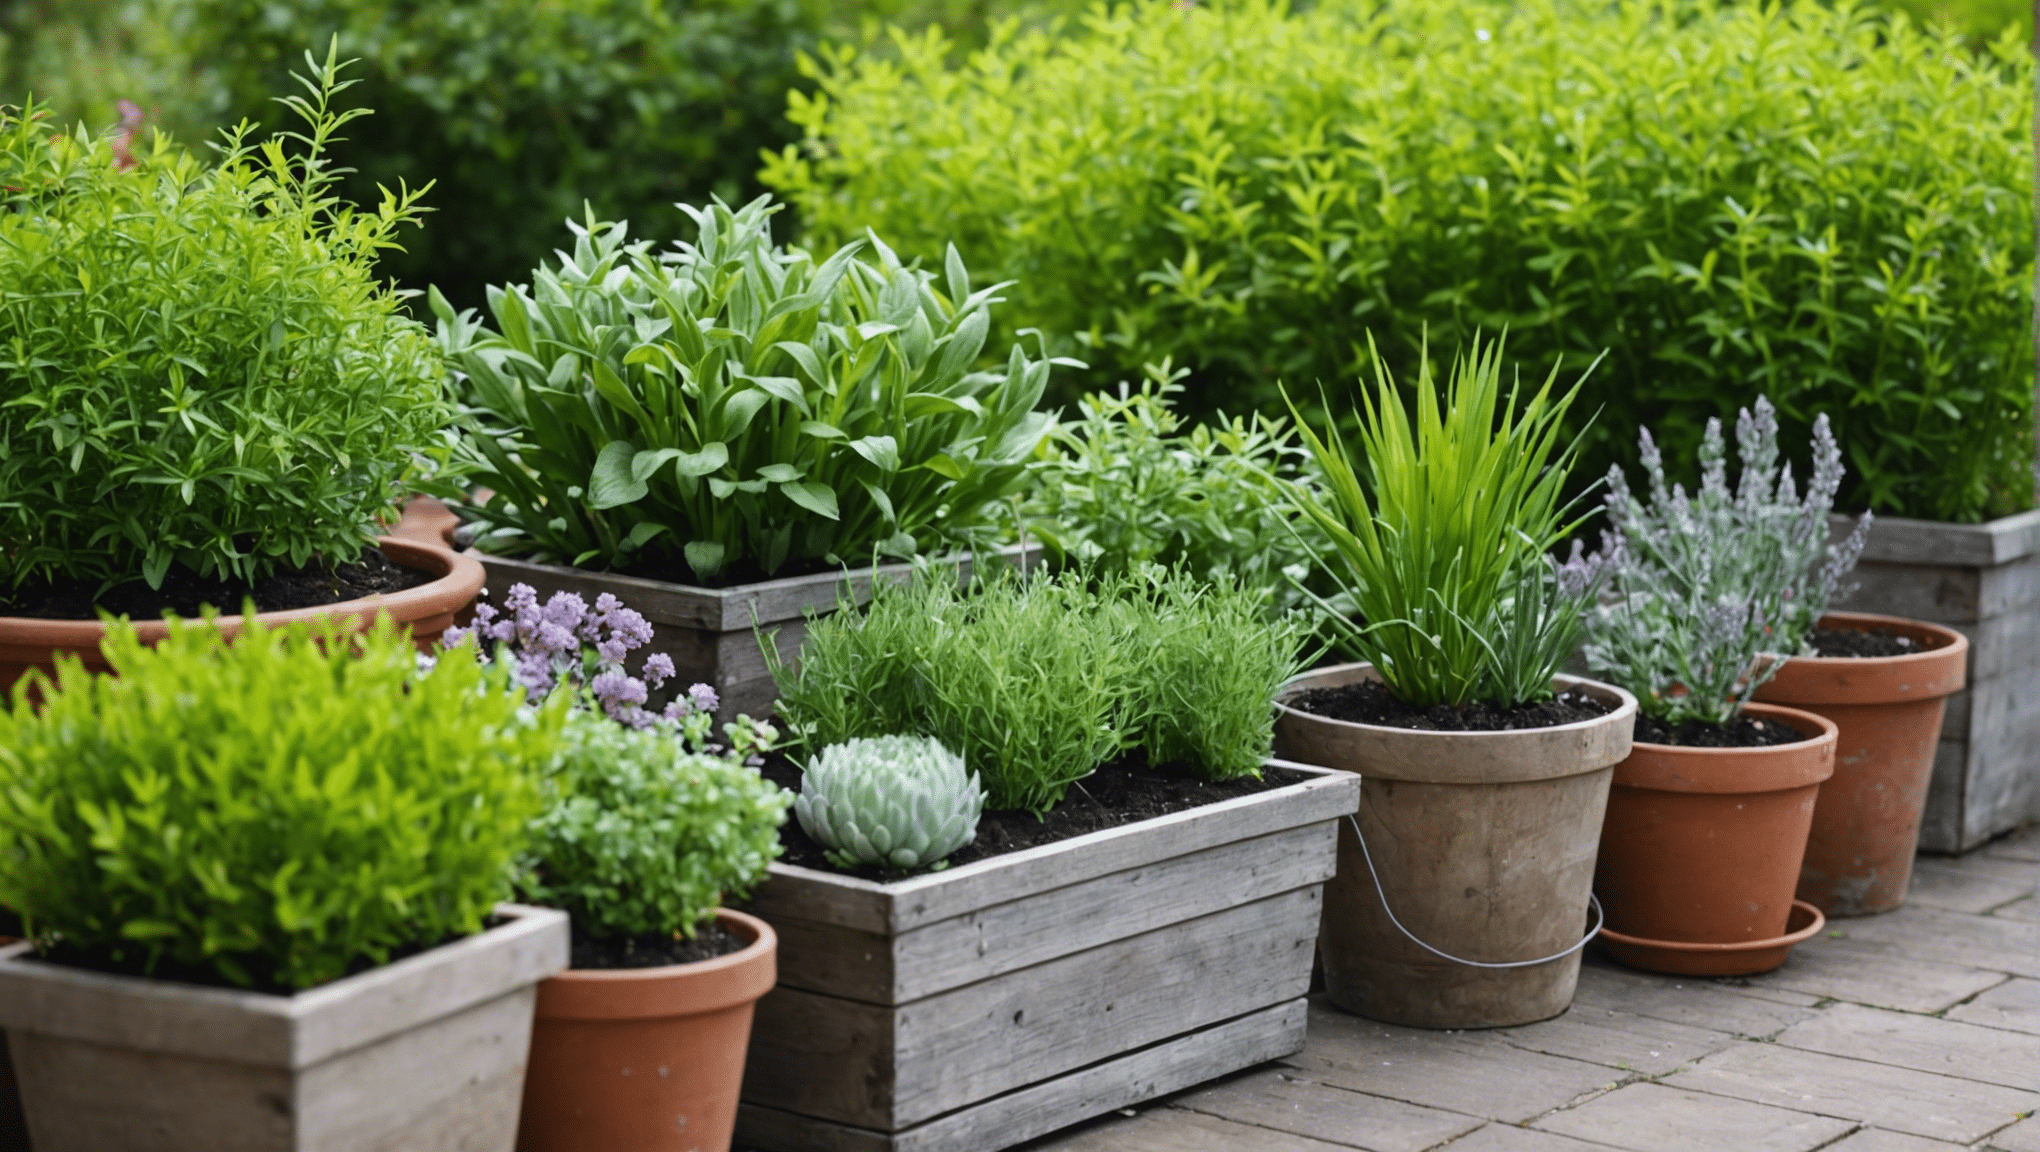 découvrez nos conseils et astuces pour créer votre propre jardin aromatique et profiter de toutes les saveurs et bienfaits des herbes aromatiques chez vous.